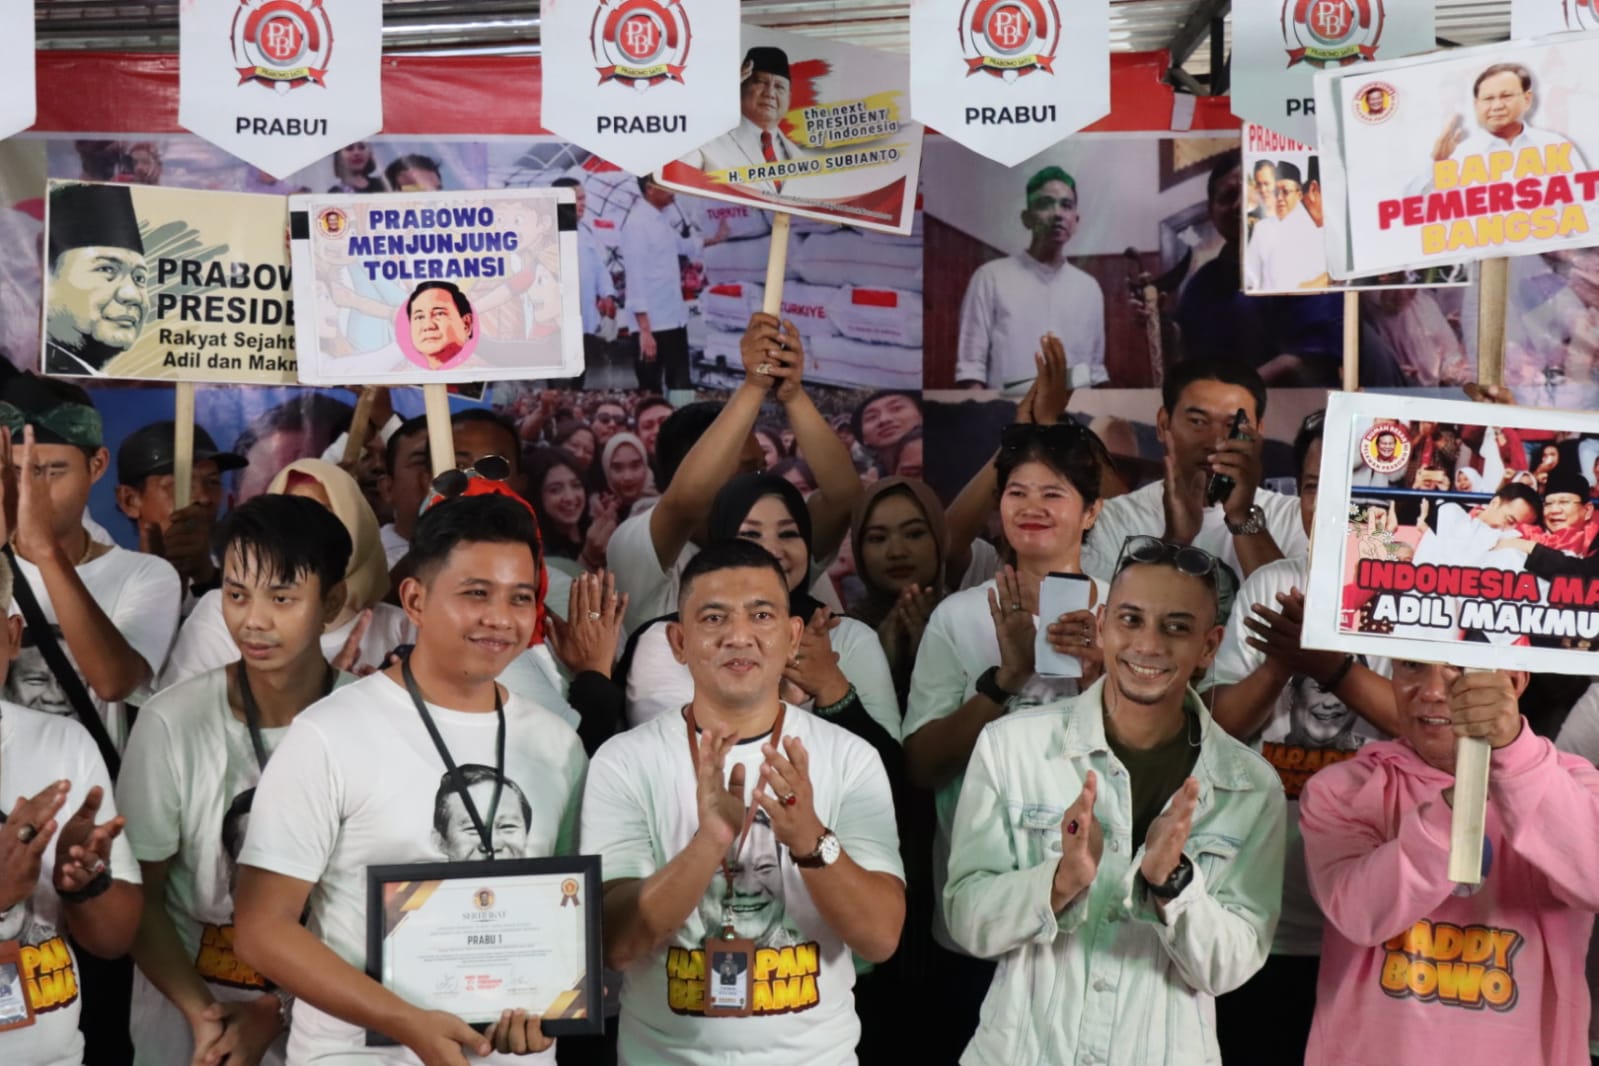 Resmi Dukung Prabowo, Relawan Prabowo Satu : "Kami Siap Sumbangkan 10 Juta Suara di 2024"